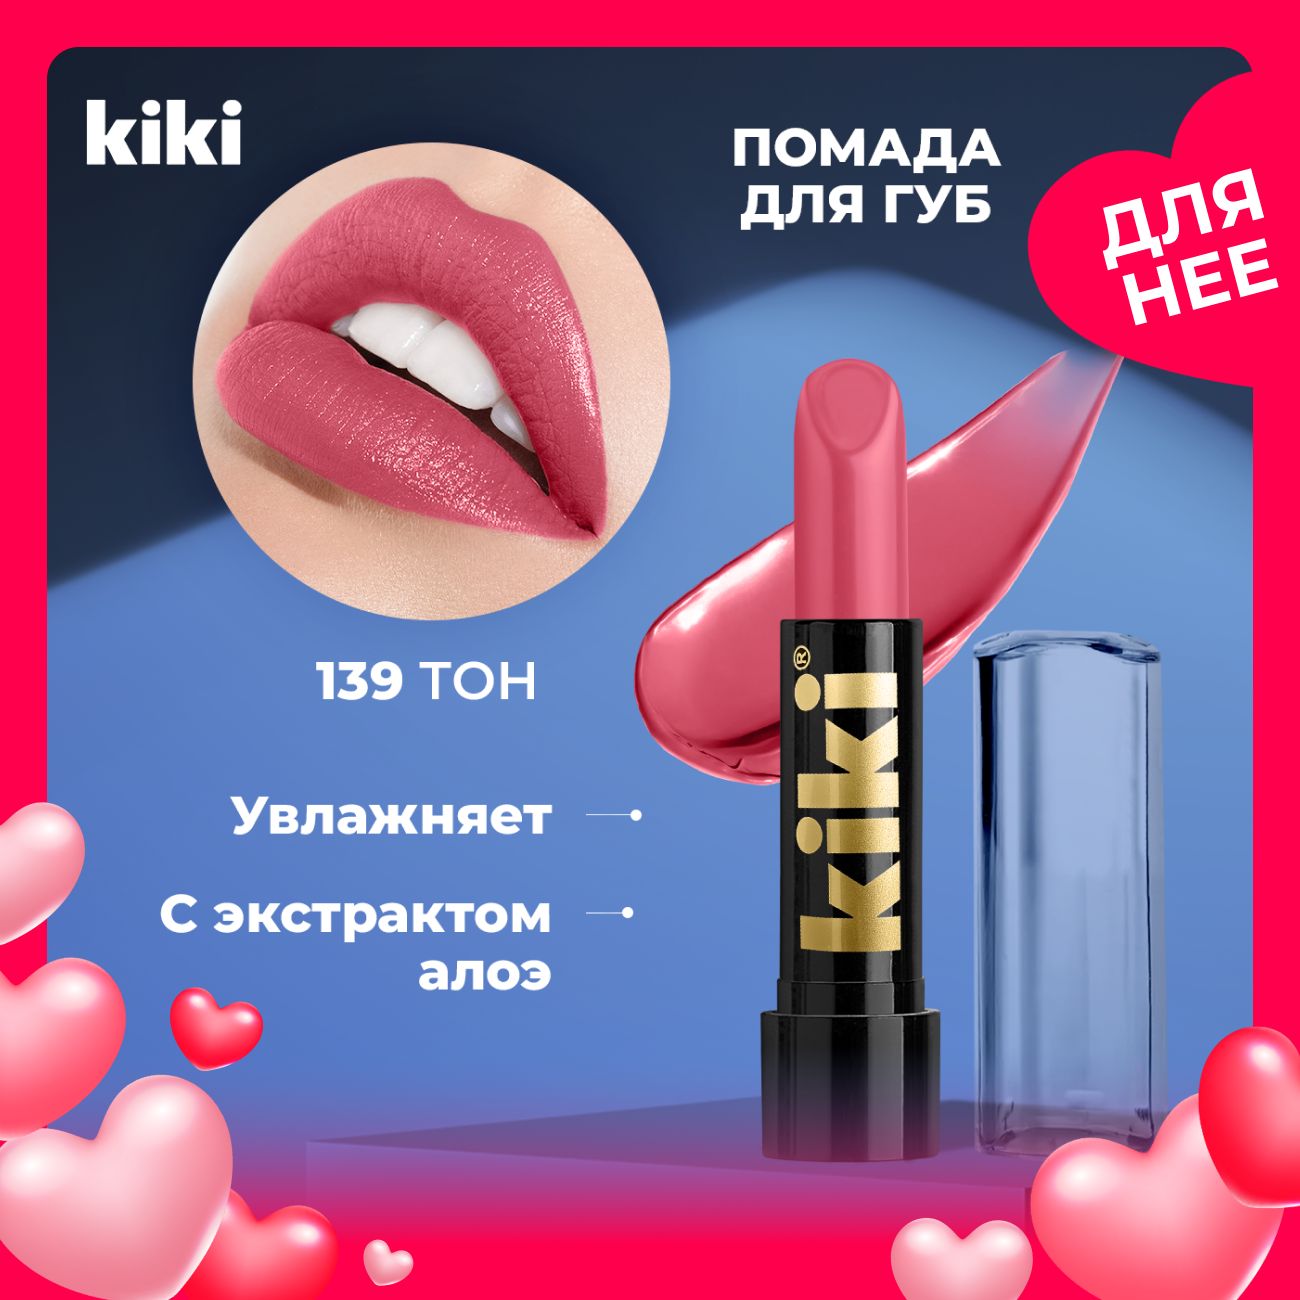 Бальзам для губ с фитостеролом расцветающий розовым Бельведер купить недорого в Москве